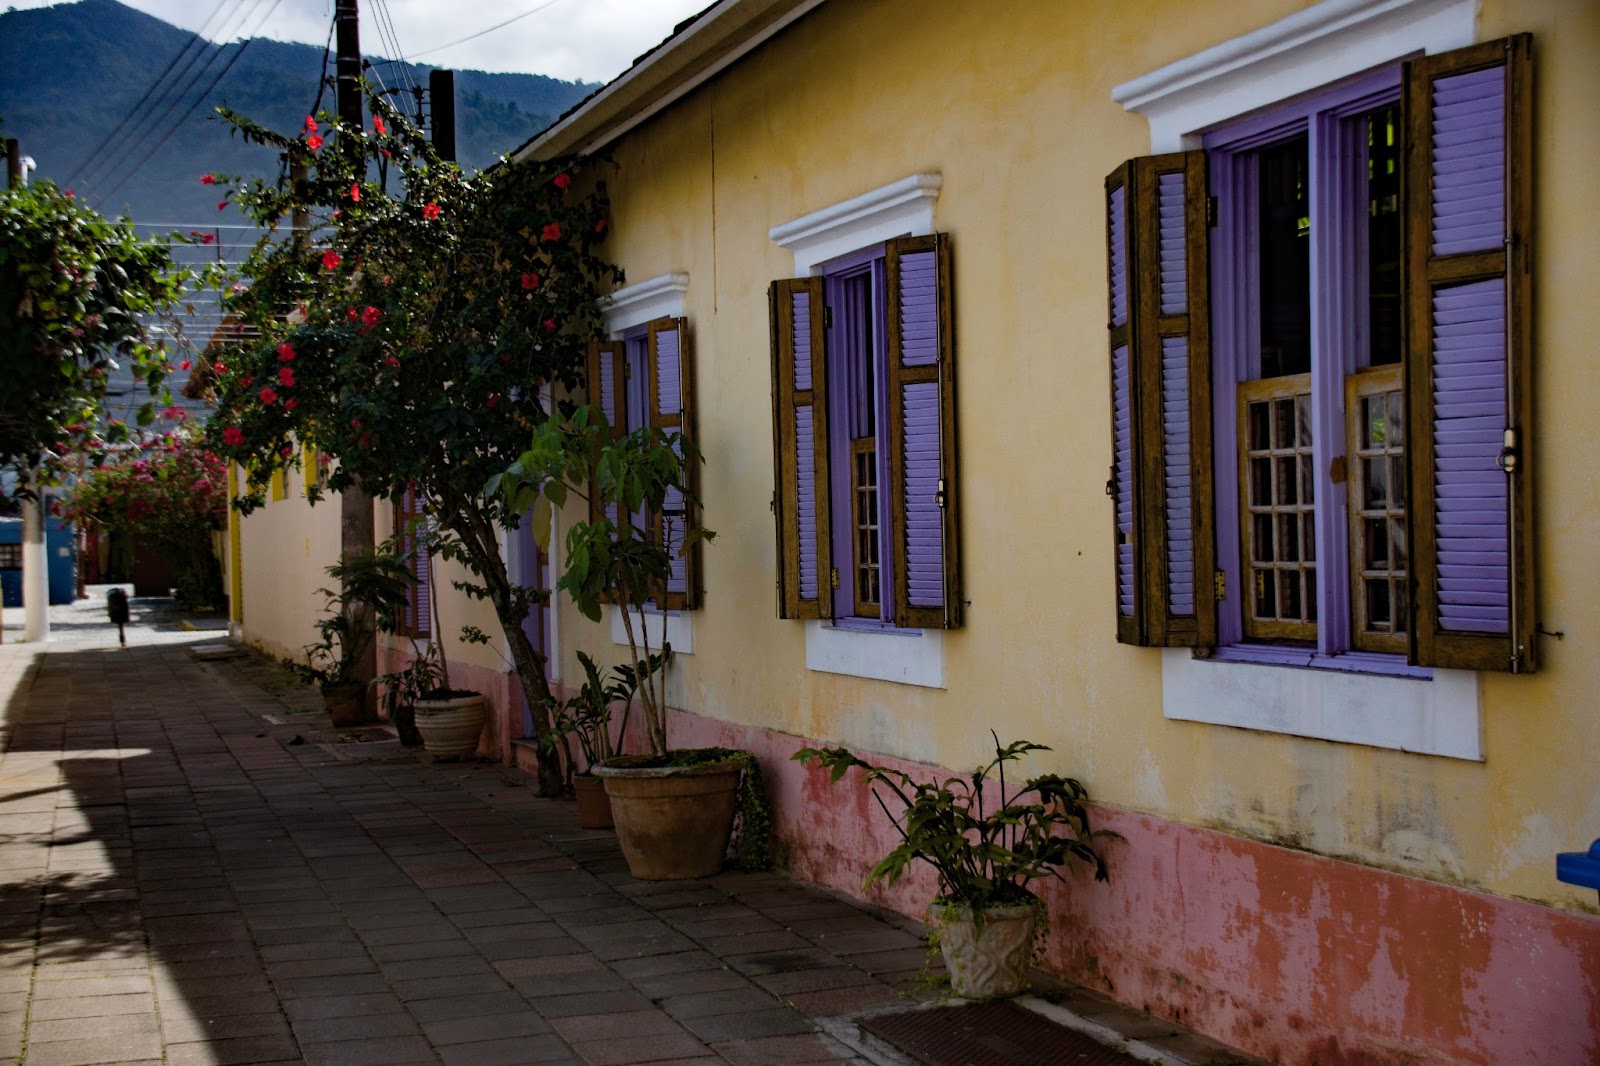 Casas em estilo colonial do Centro Histórico de São Sebastião. 